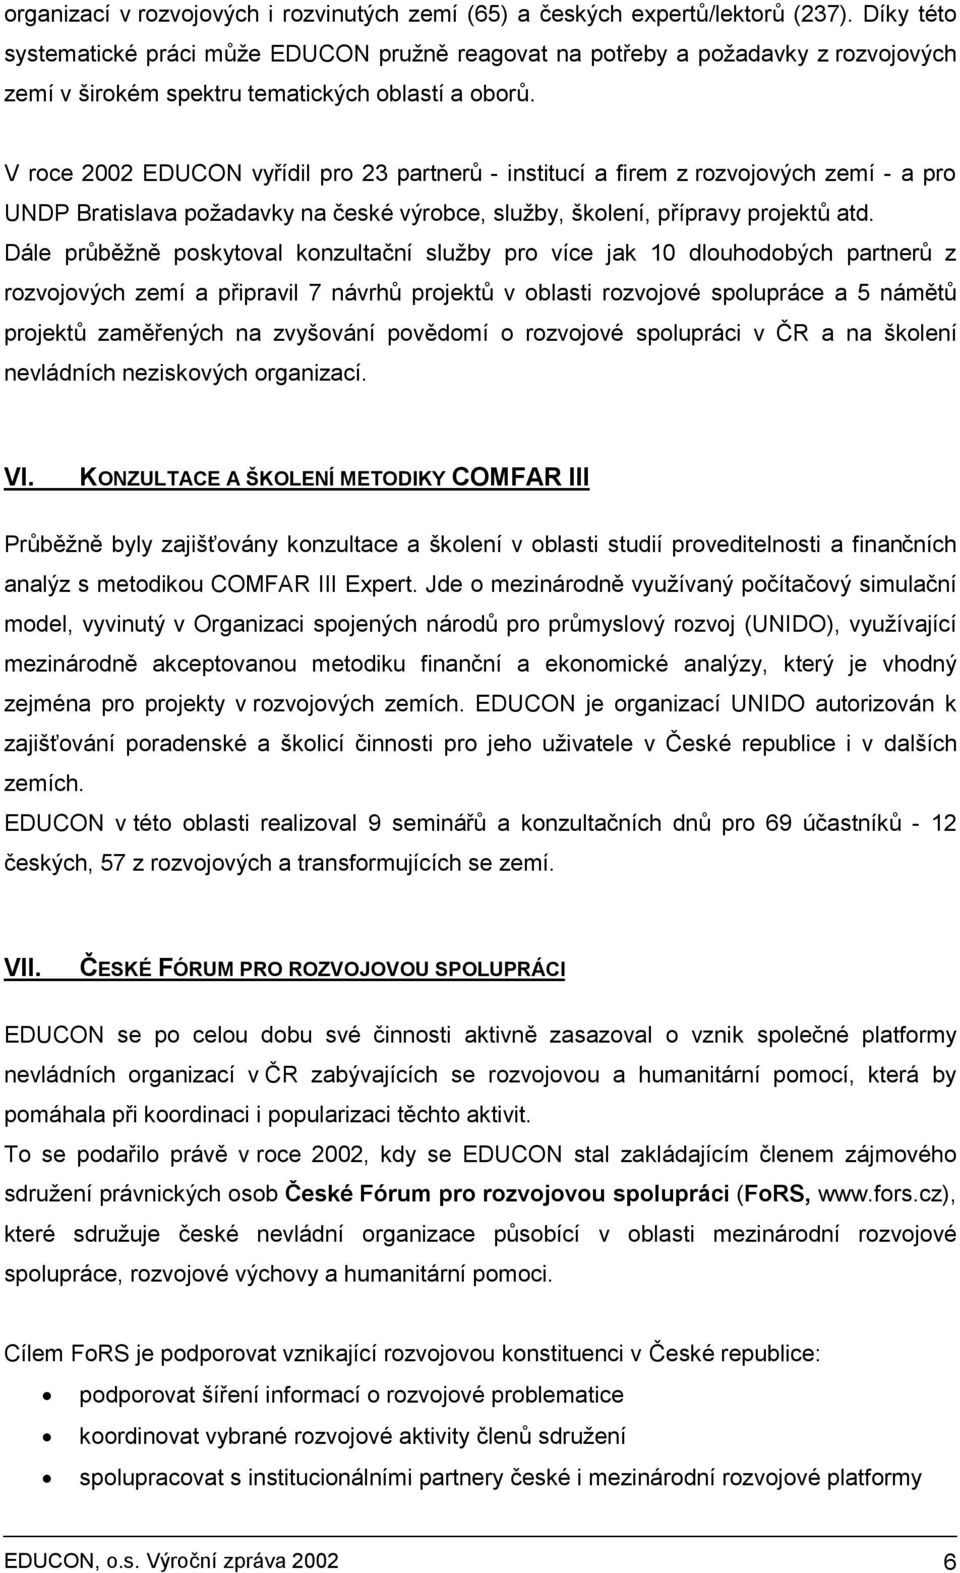 V roce 2002 EDUCON vyřídil pro 23 partnerů - institucí a firem z rozvojových zemí - a pro UNDP Bratislava požadavky na české výrobce, služby, školení, přípravy projektů atd.